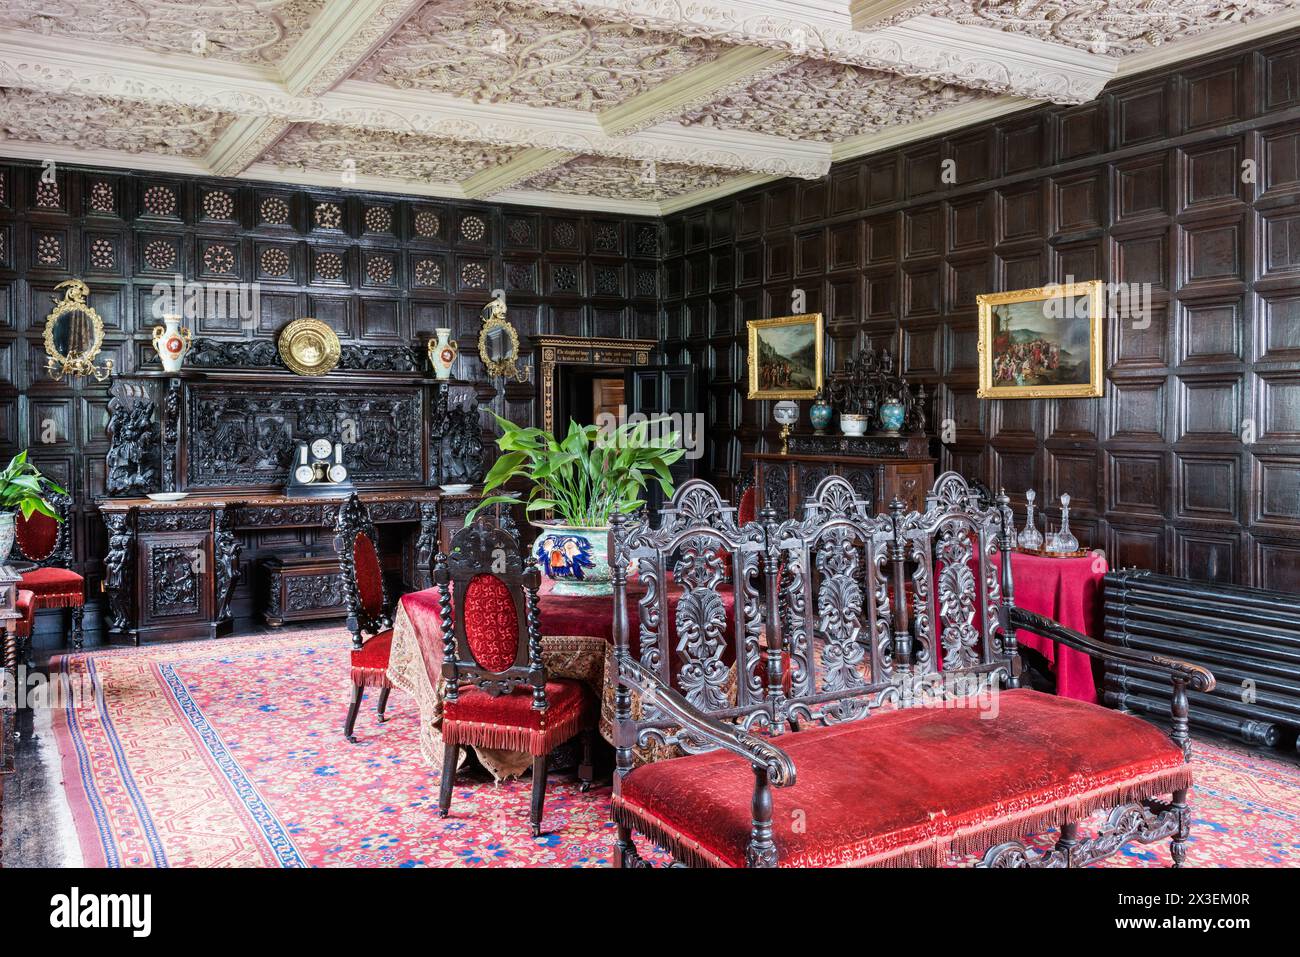 Sala da pranzo rivestita in pannelli di legno presso la Speke Hall, residenza Tudor del National Trust di grado i, Liverpool, Inghilterra, Regno Unito. Foto Stock